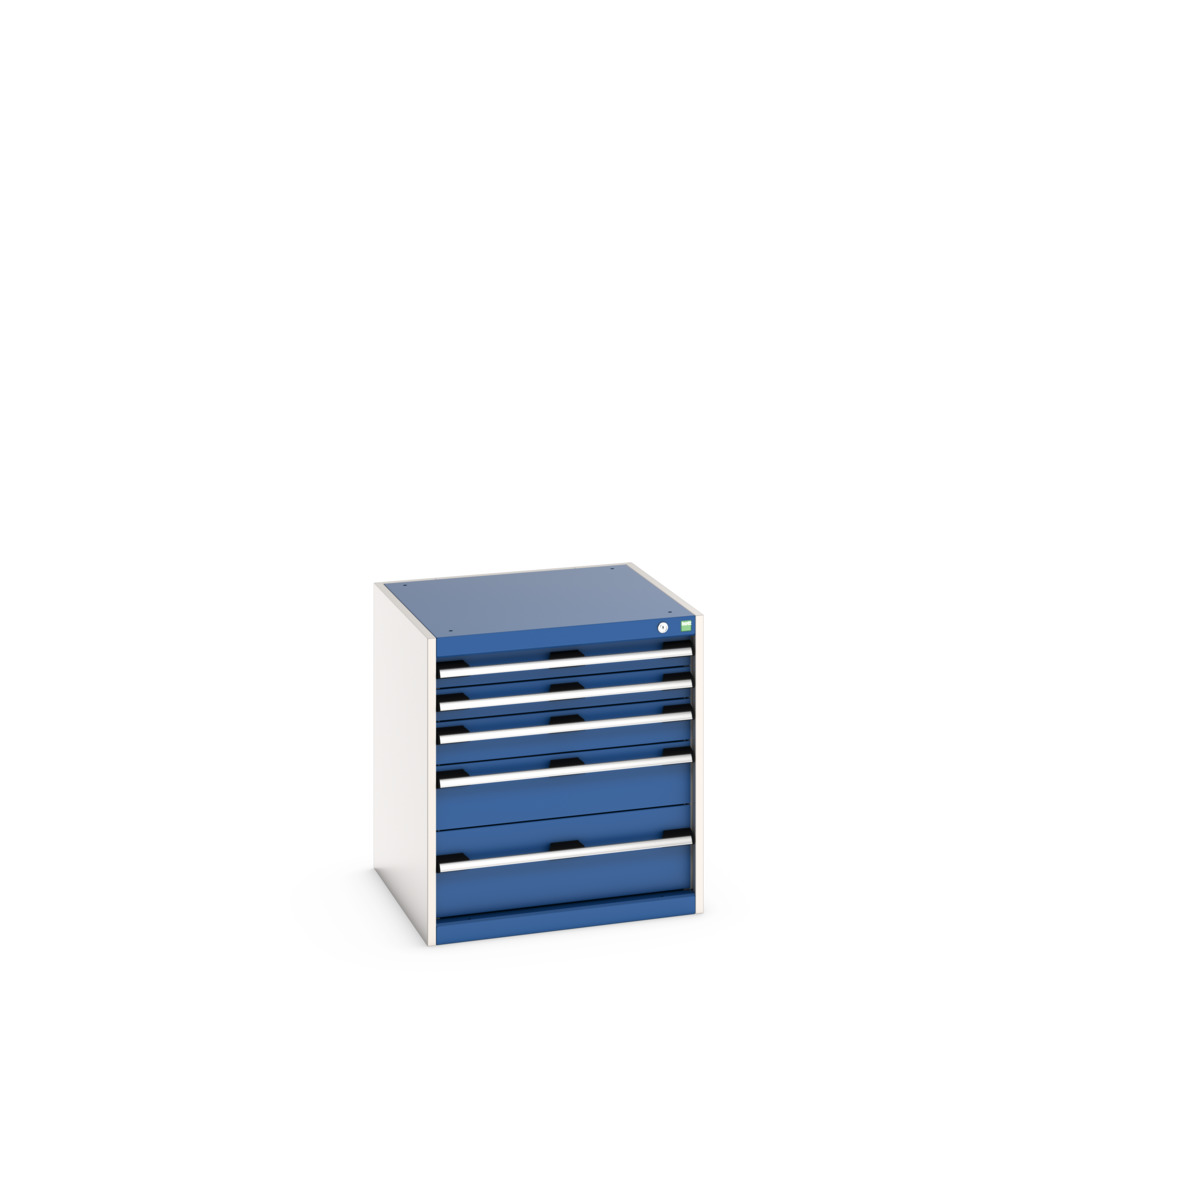 40019027.11V - cubio drawer cabinet